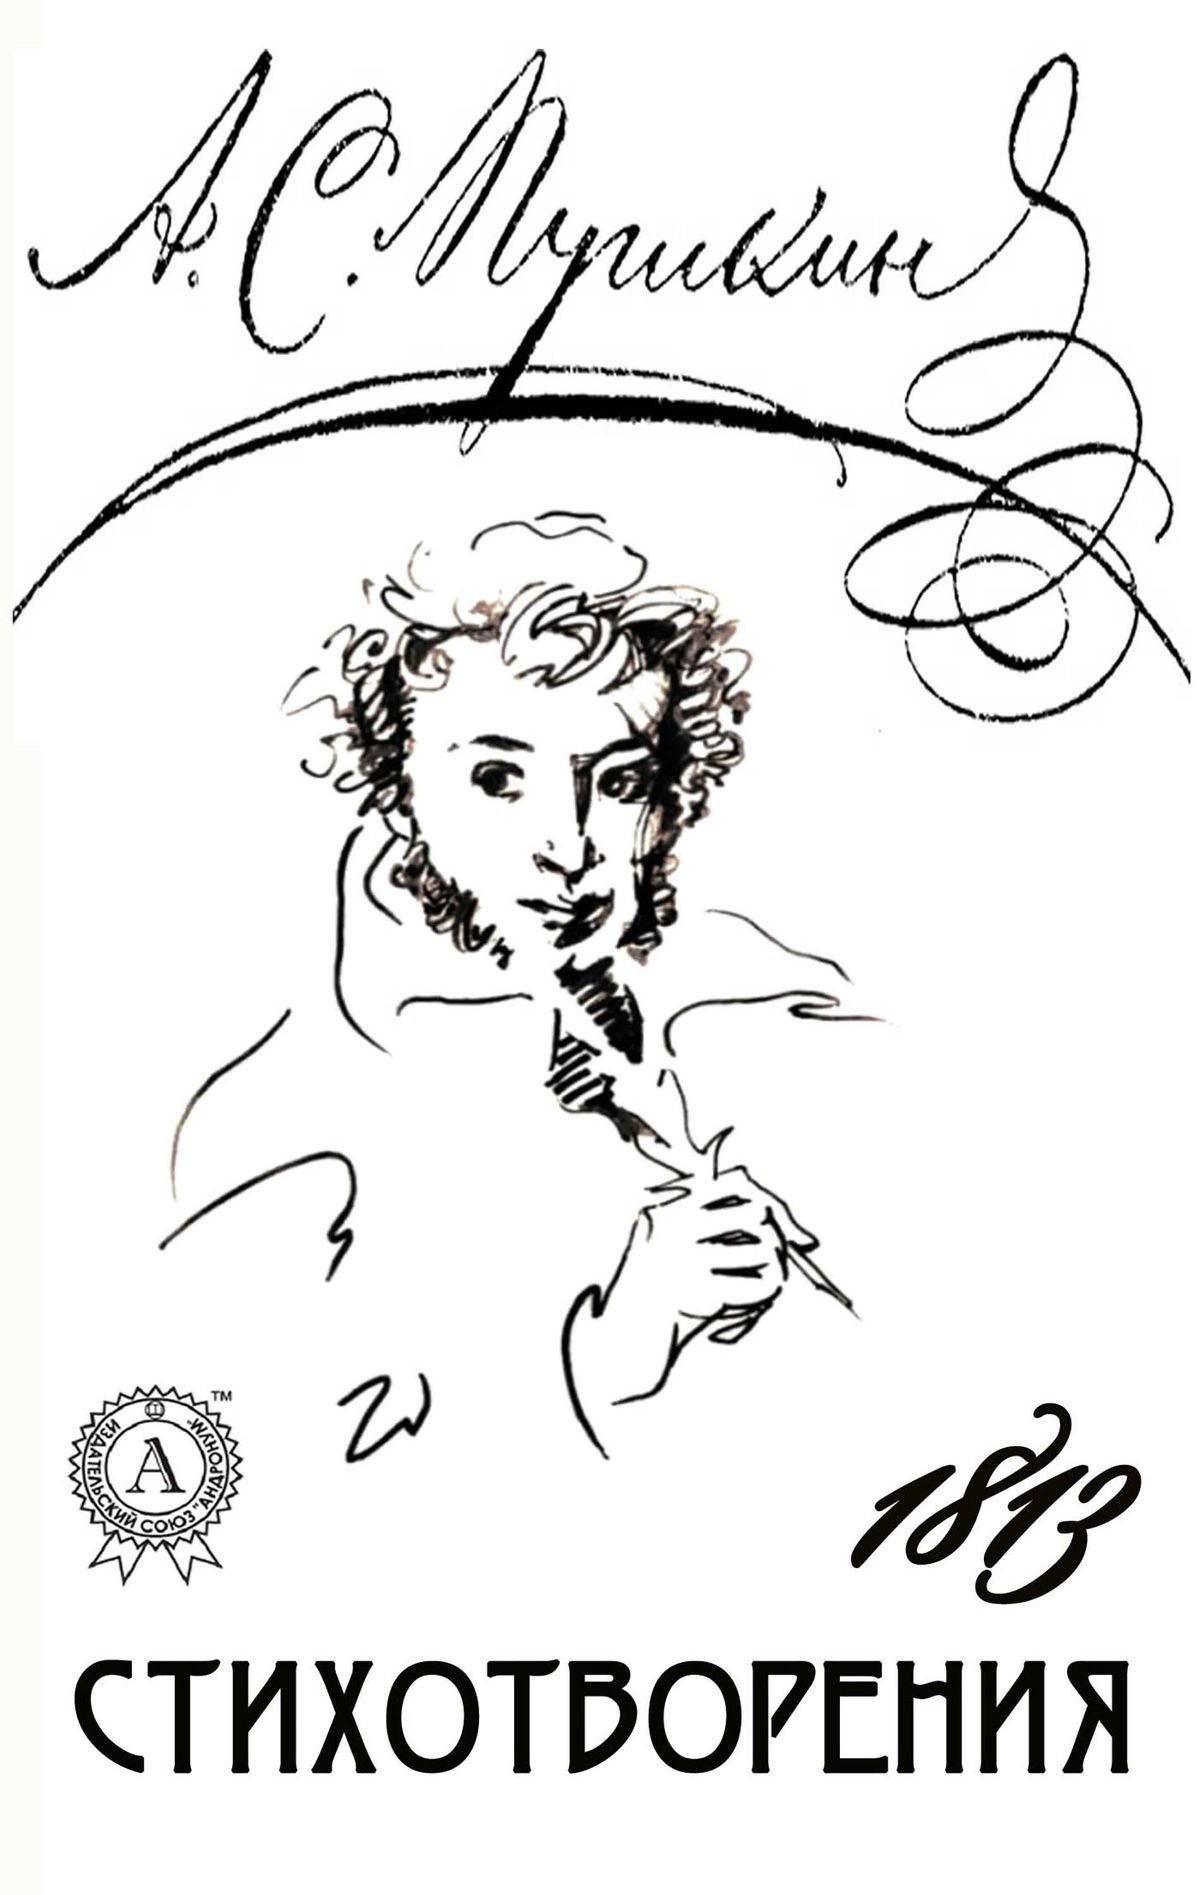 Обложка сборника стихов Пушкина